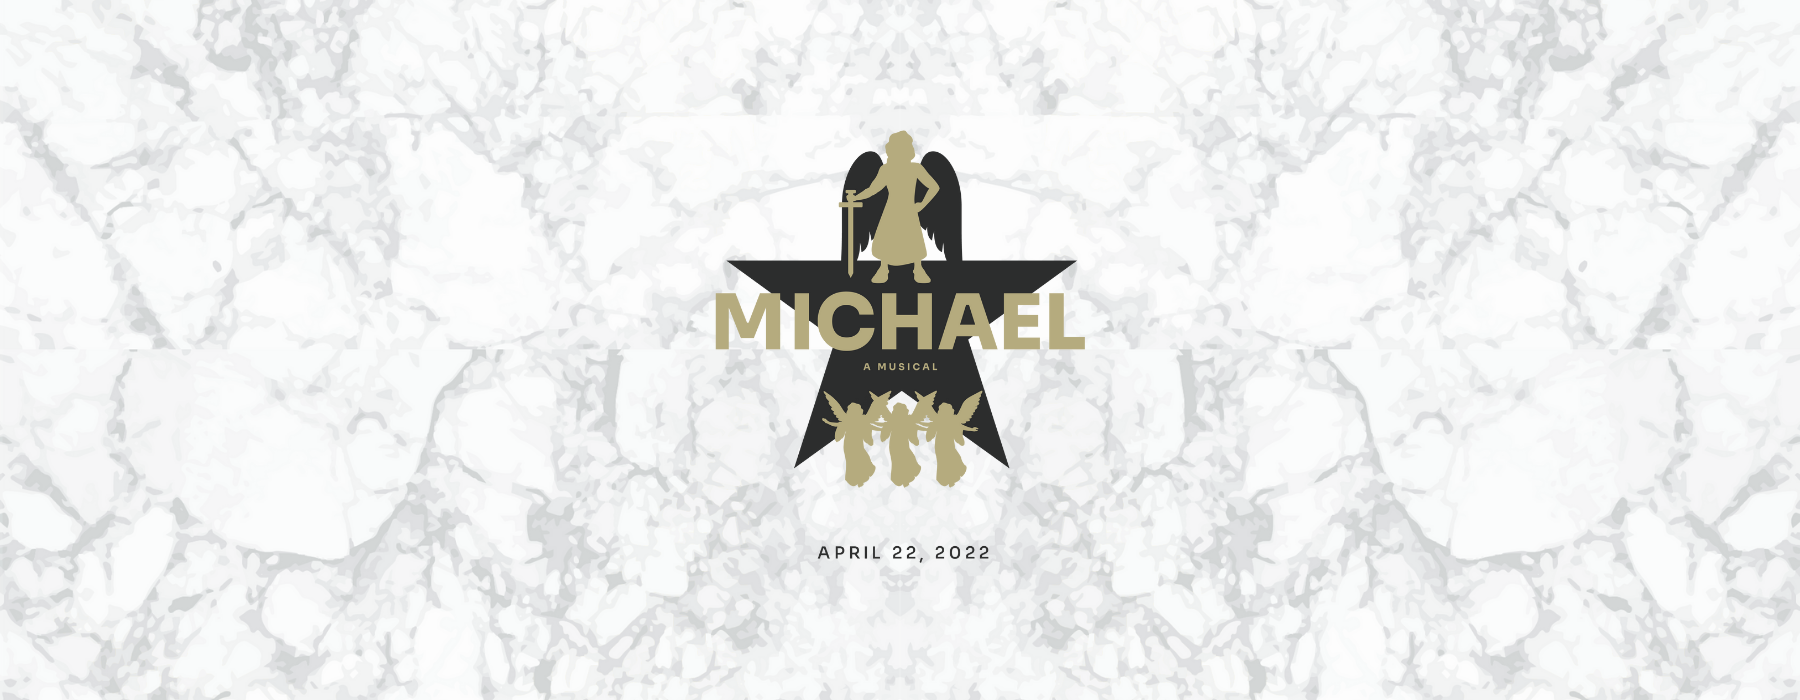 michael-a-musical-3_417